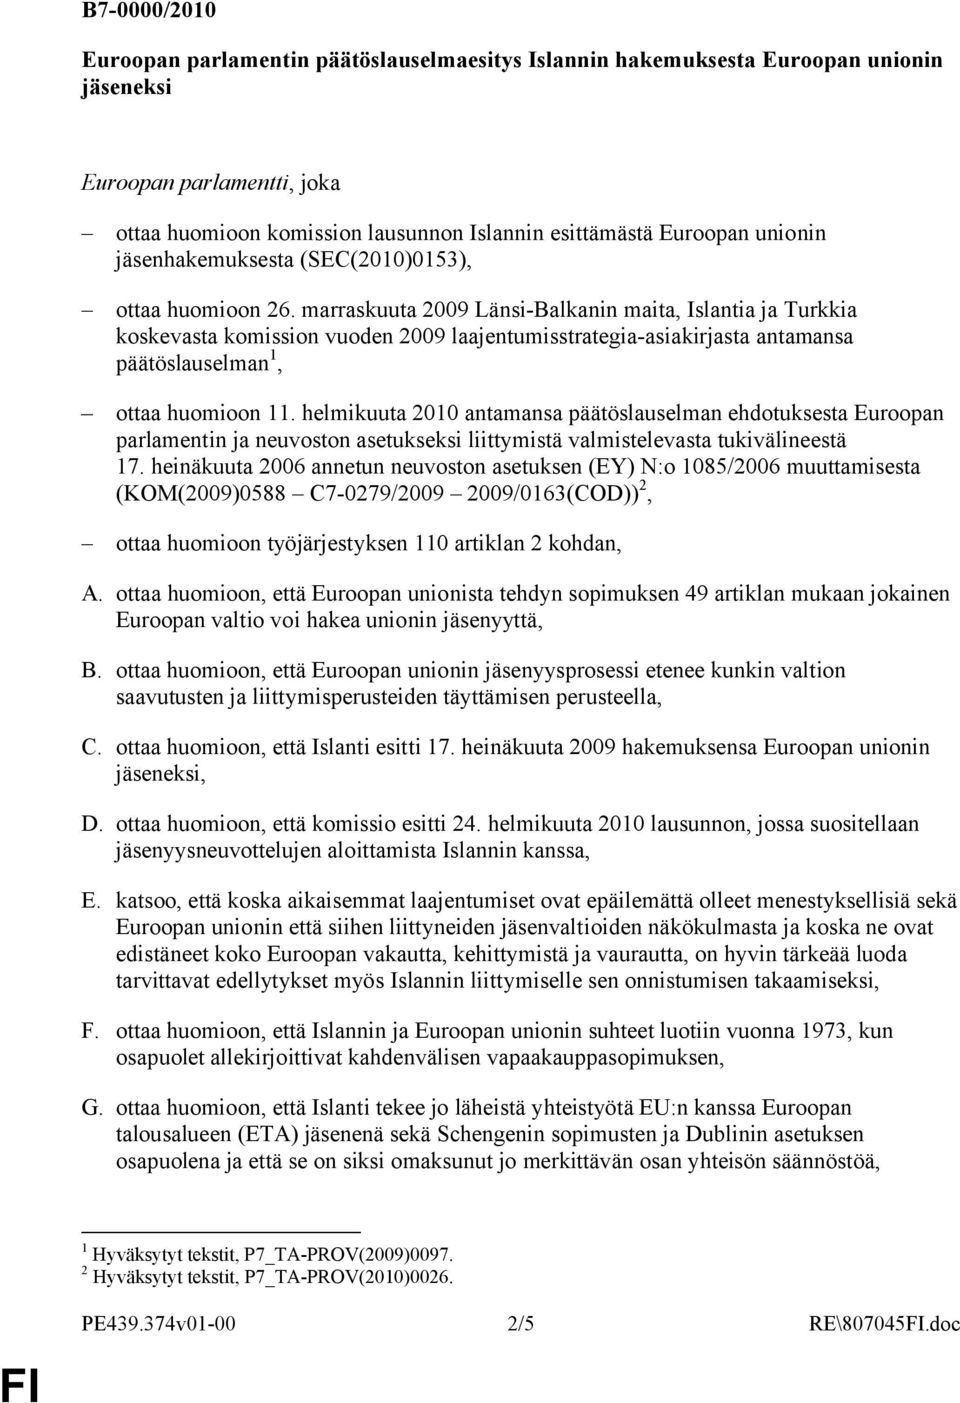 marraskuuta 2009 Länsi-Balkanin maita, Islantia ja Turkkia koskevasta komission vuoden 2009 laajentumisstrategia-asiakirjasta antamansa päätöslauselman 1, ottaa huomioon 11.